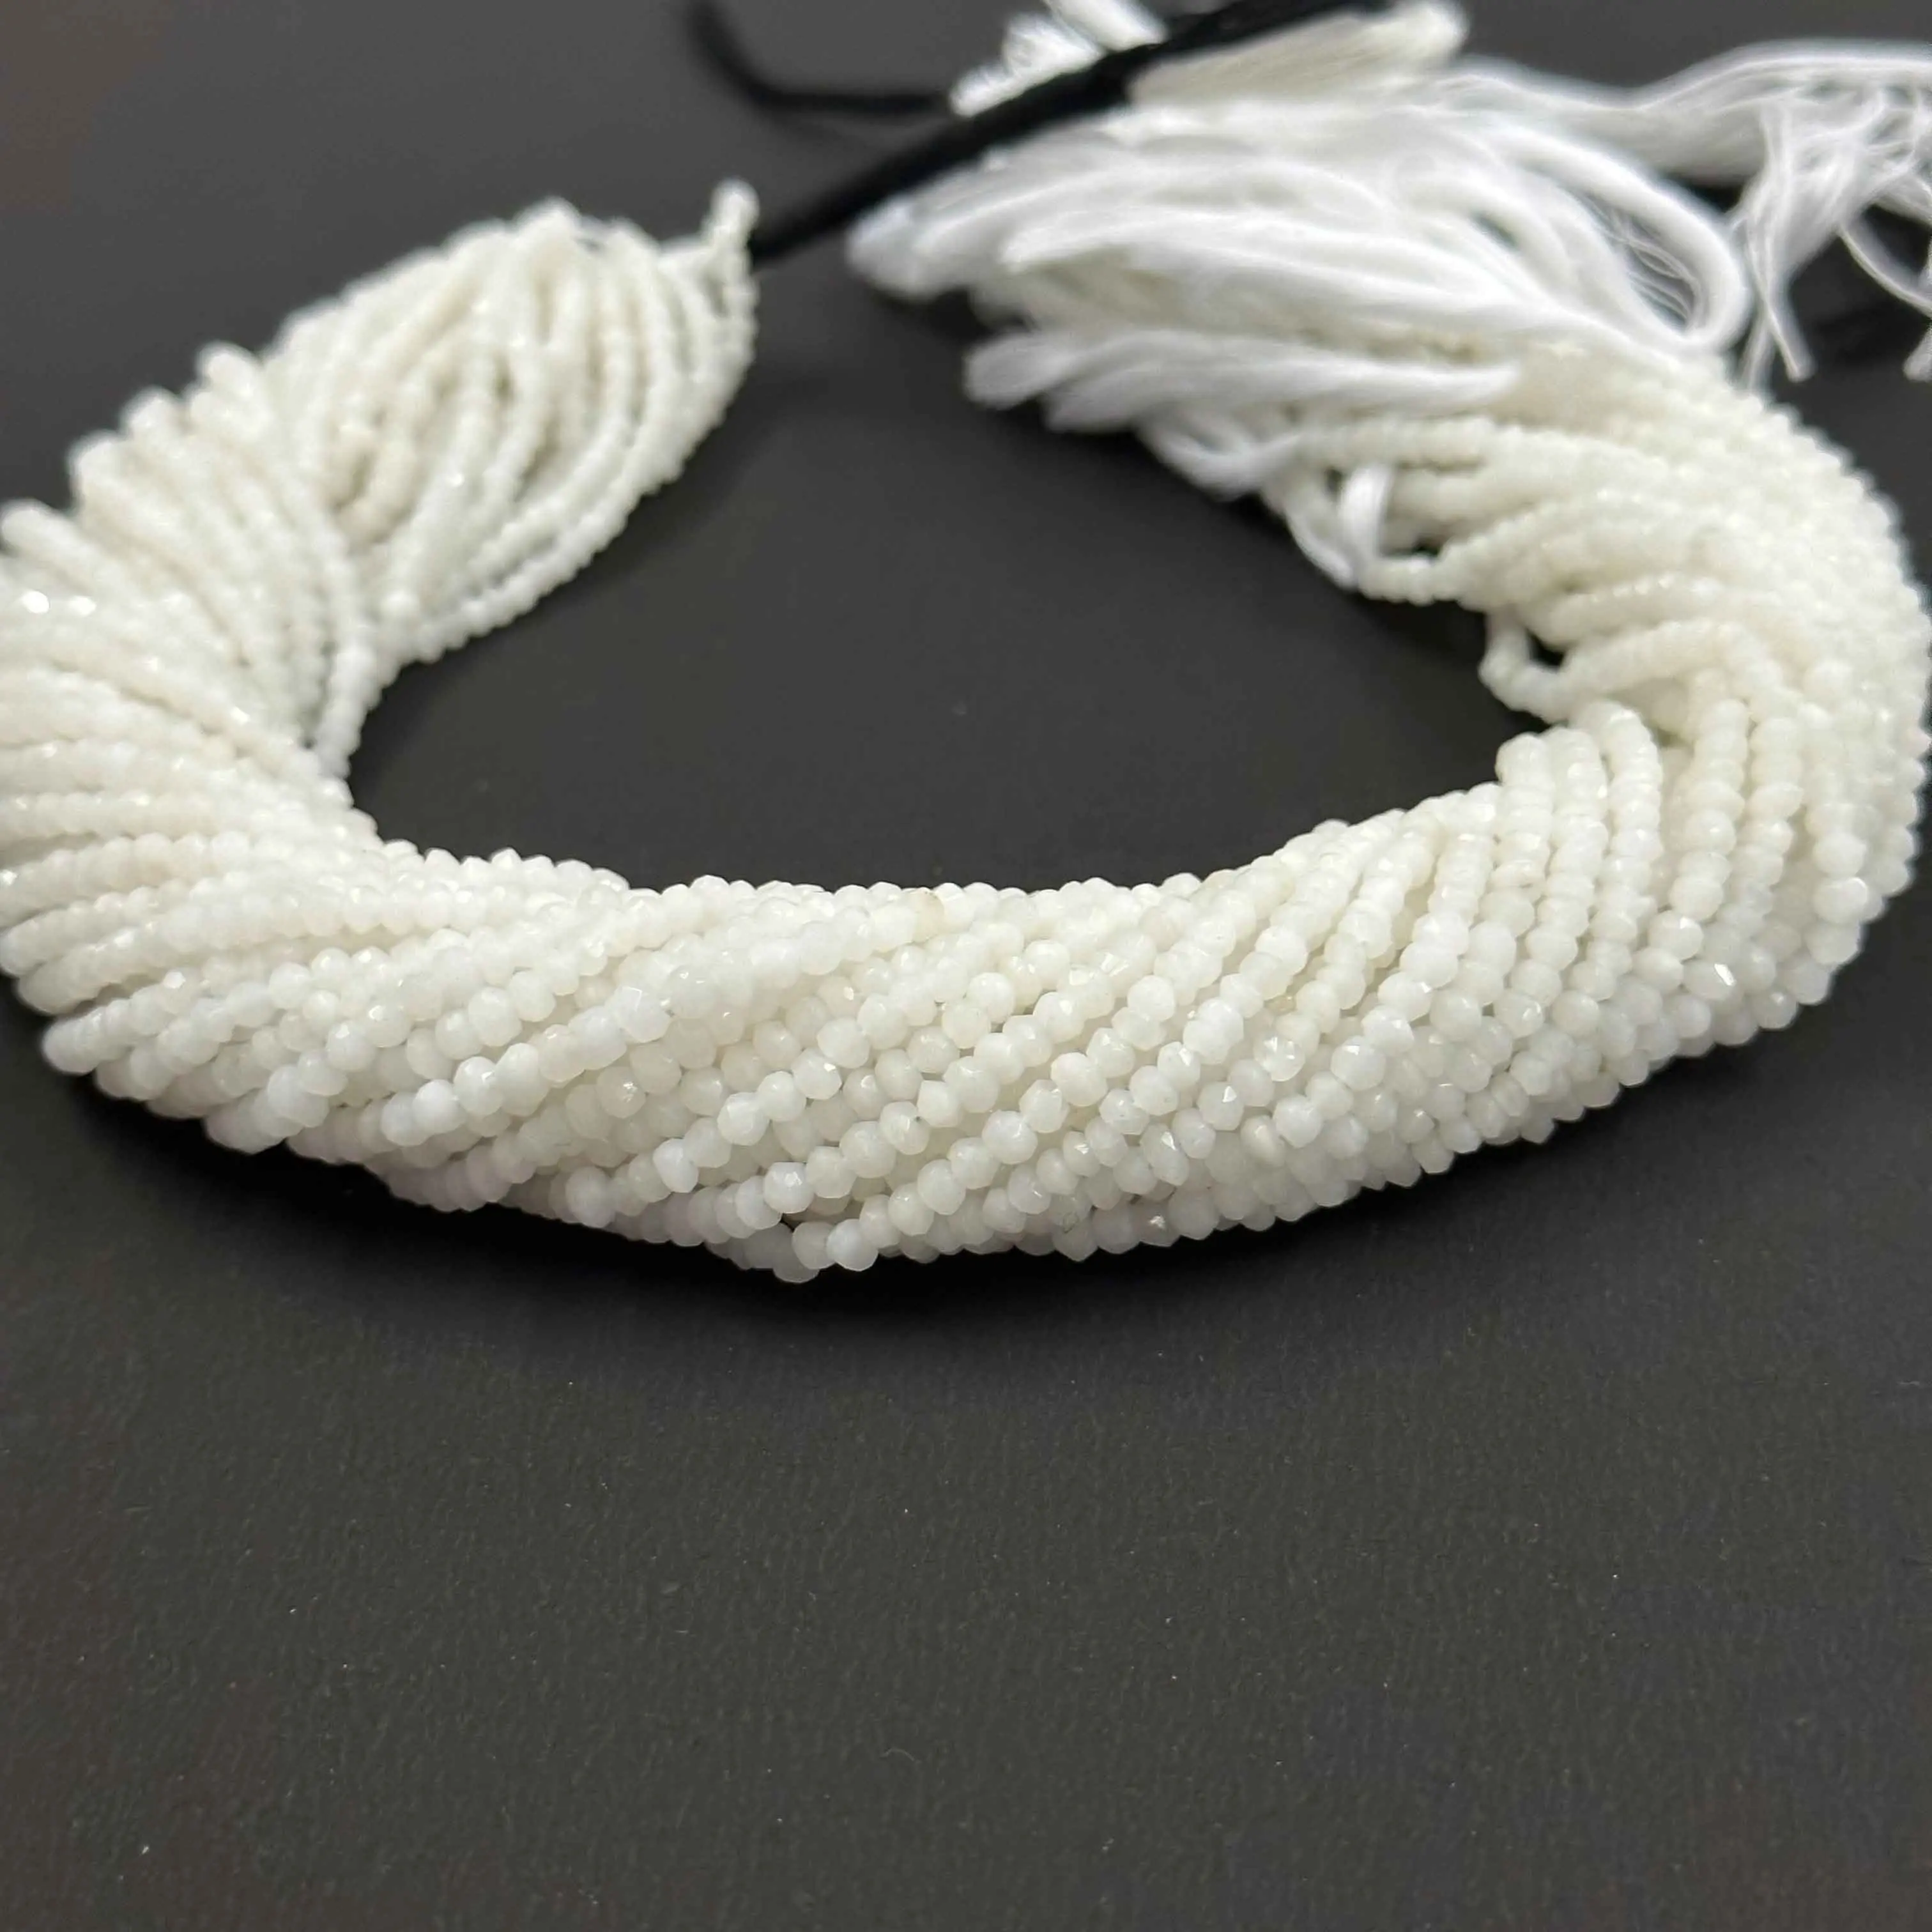 Migliore qualità prezzo accessibile naturale 3-3.5mm agata bianca gemma sfaccettata Rondelle perline filo per la creazione di gioielli